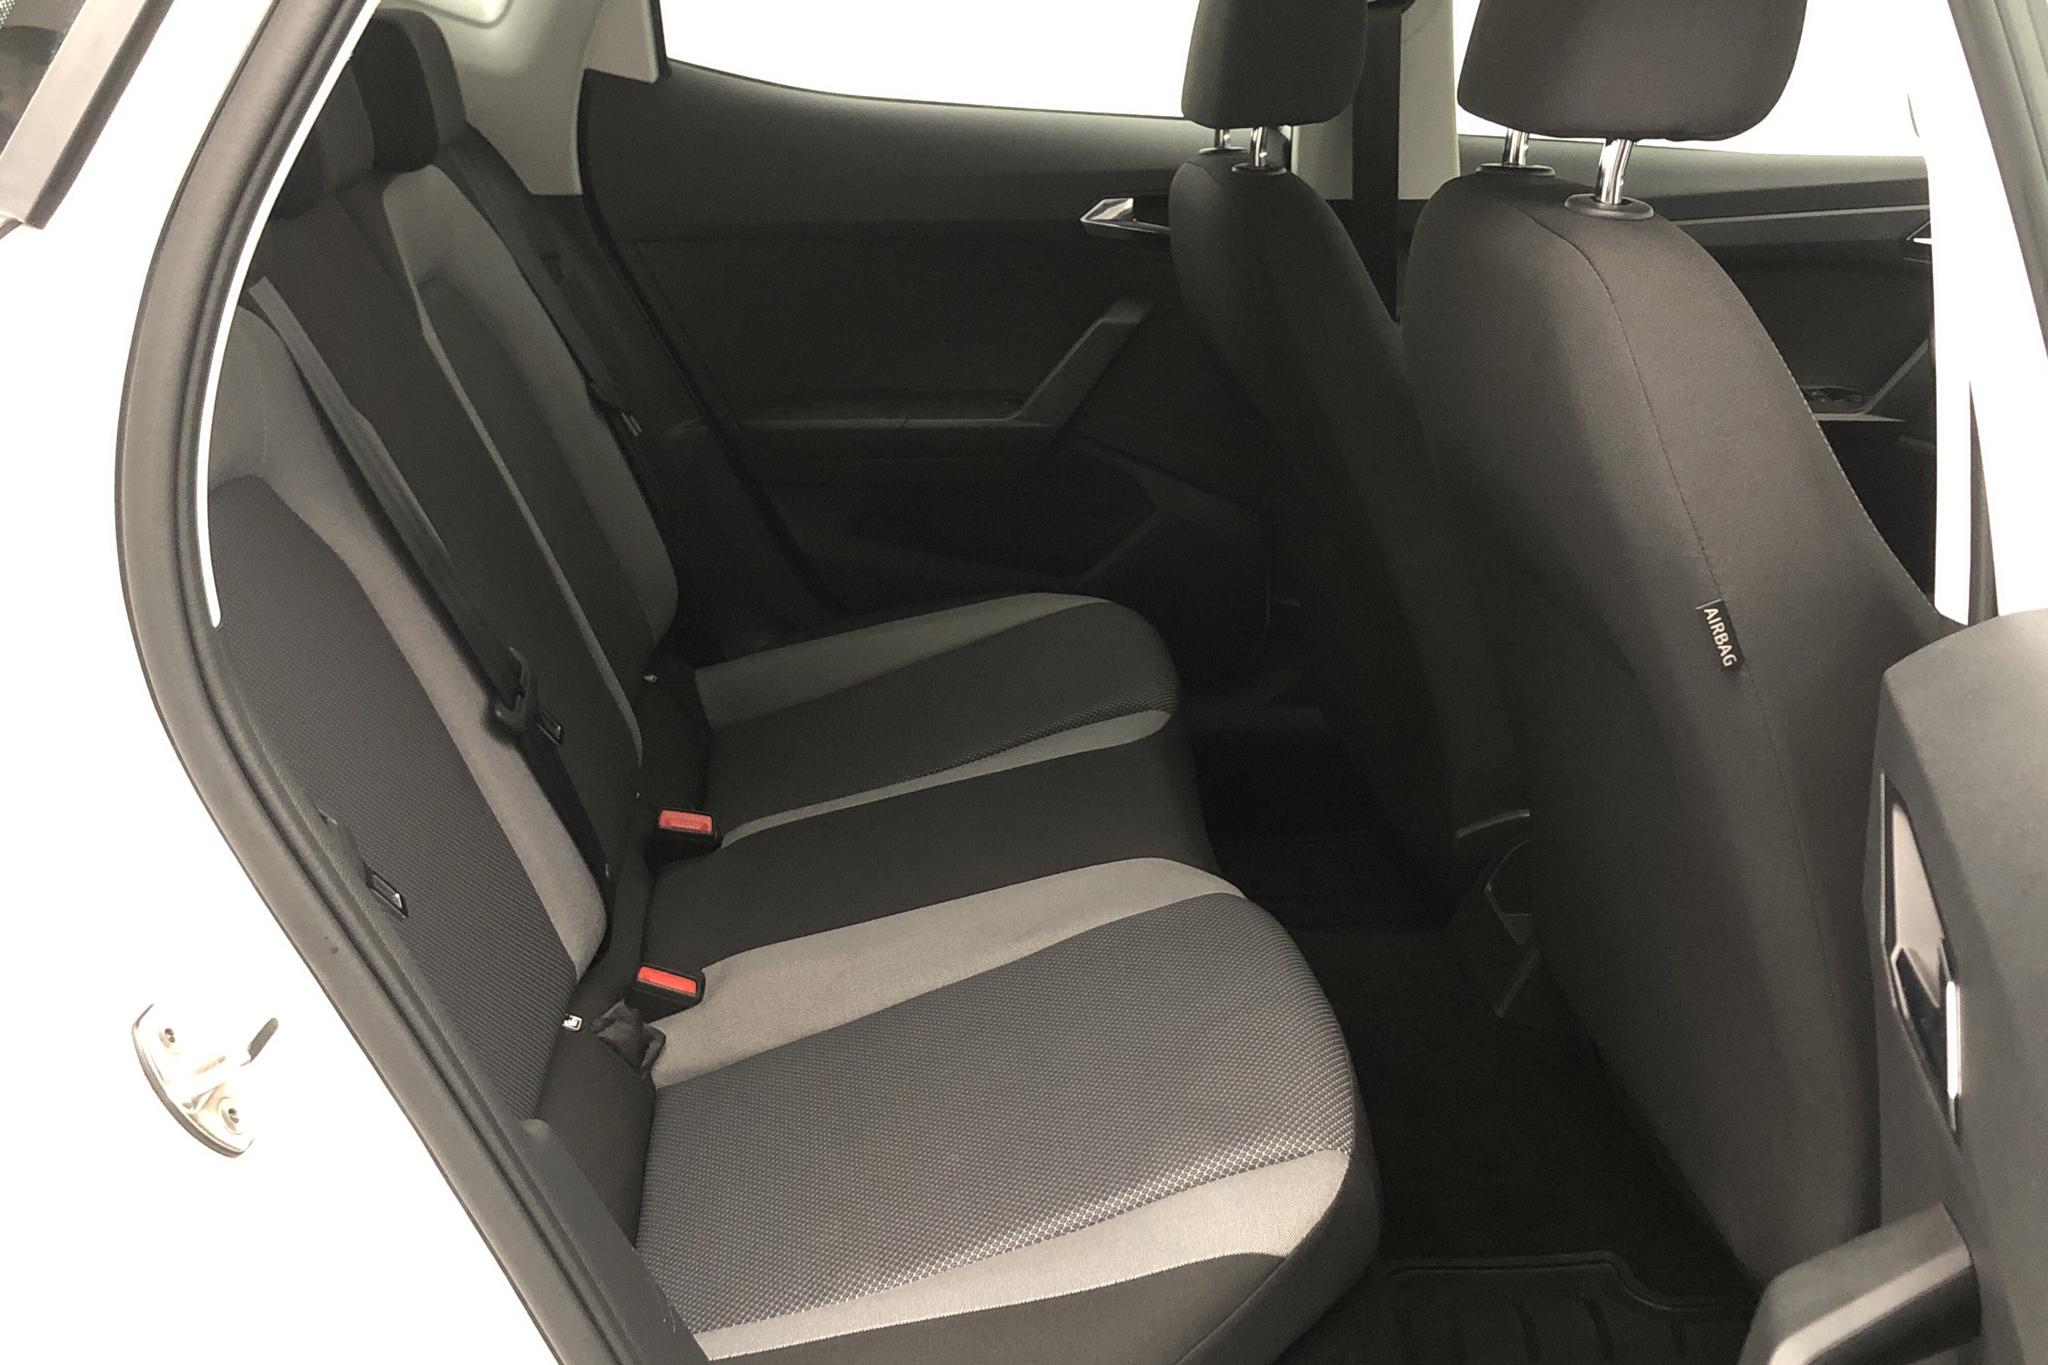 Seat Ibiza 1.0 MPI 5dr (80hk) - 3 812 mil - Manuell - vit - 2019